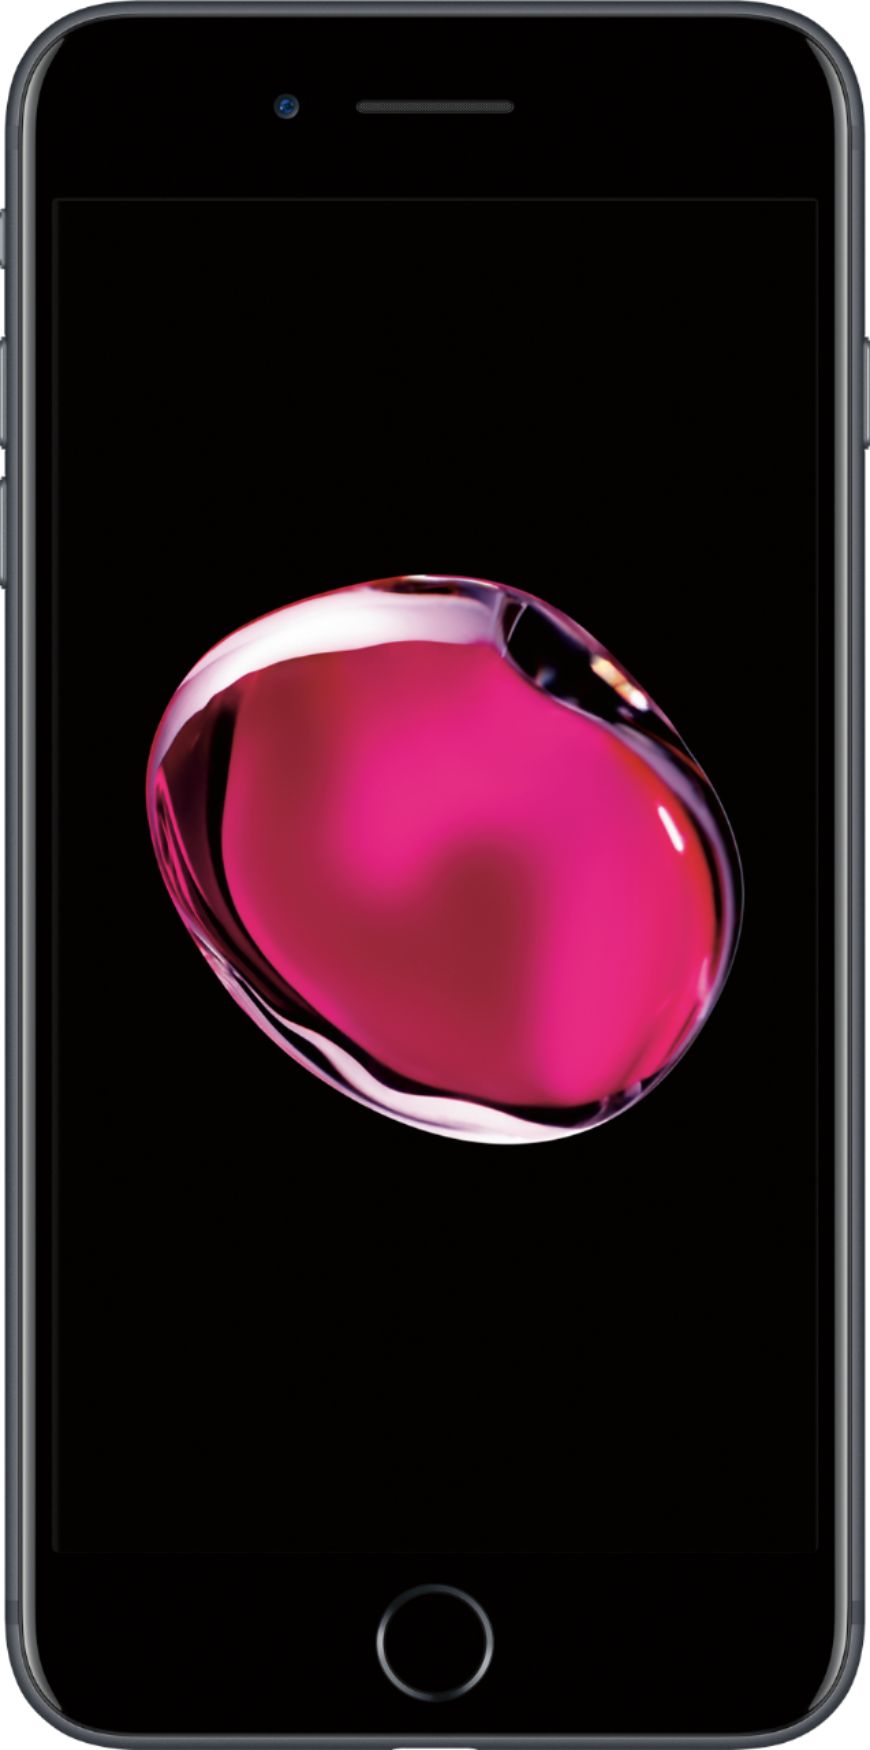 apple iphone 7 32gb smartphone - black - unlocked - certified refurbished best buy canada on iphone 7 plus best buy refurbished